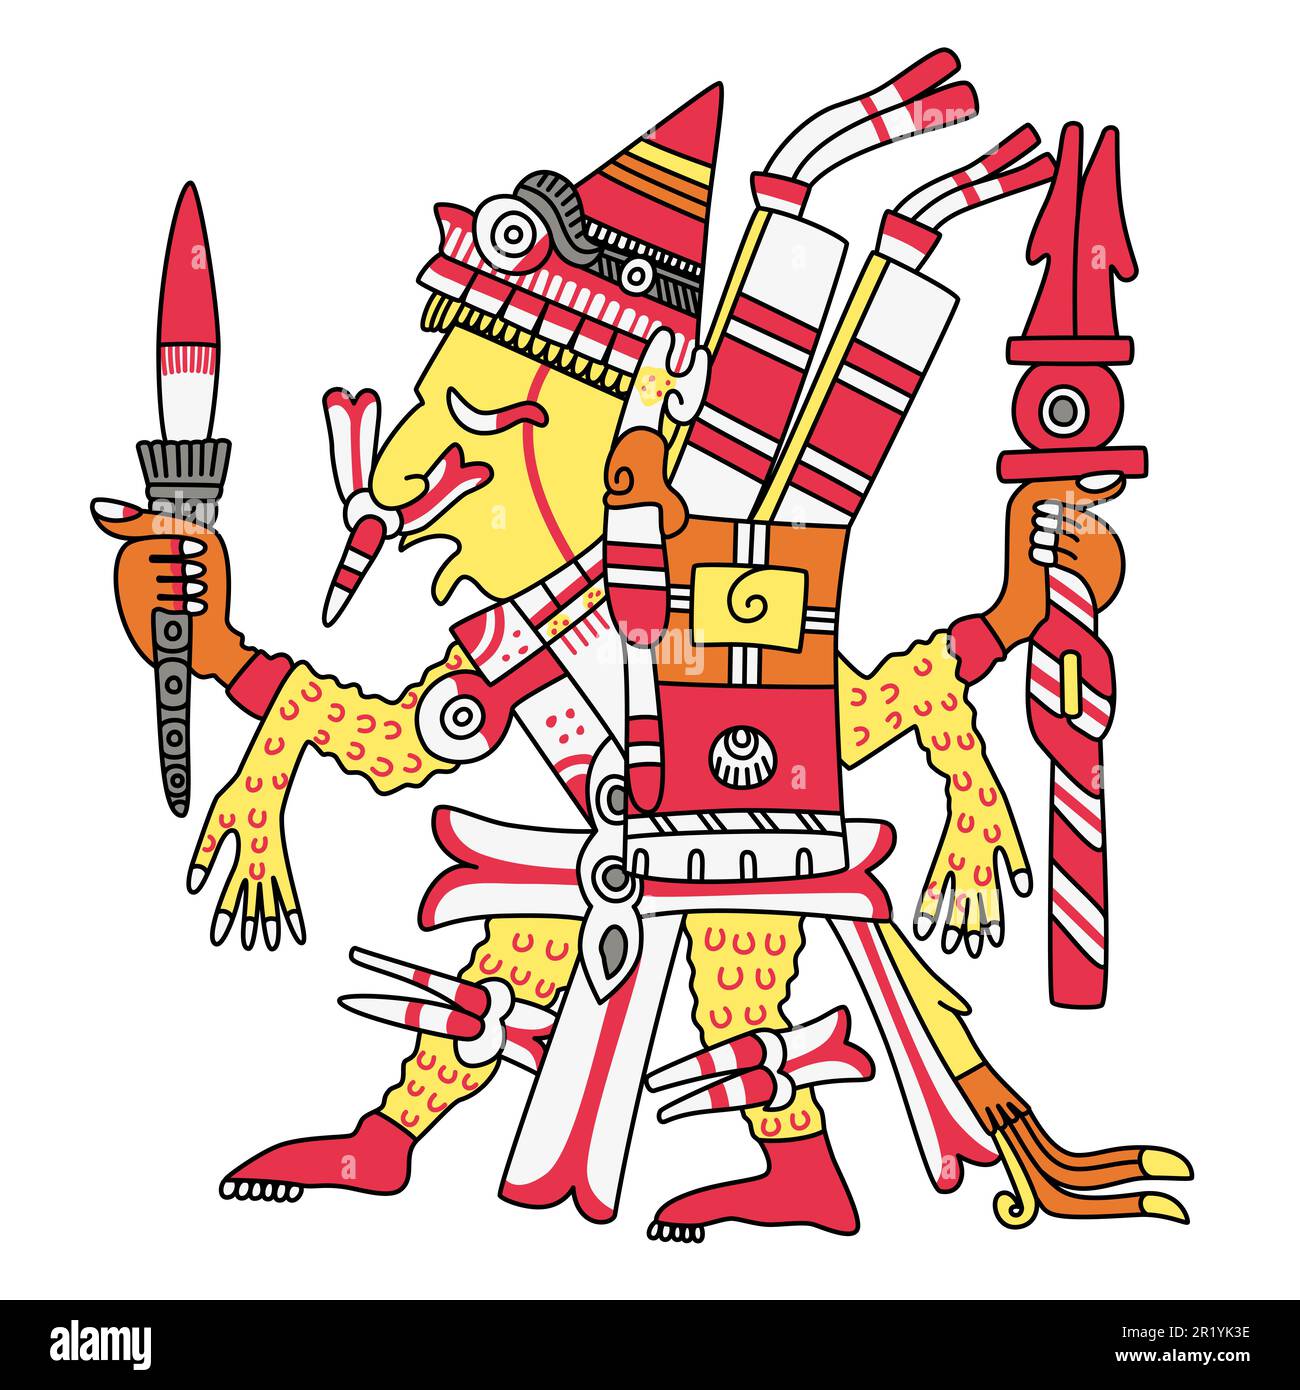 Xipe Totec, Xipétotec, dieu aztèque de la farce rituelle et de l'agriculture, seigneur des saisons, de la régénération et de l'artisanat, dirigeant de l'Orient. Banque D'Images